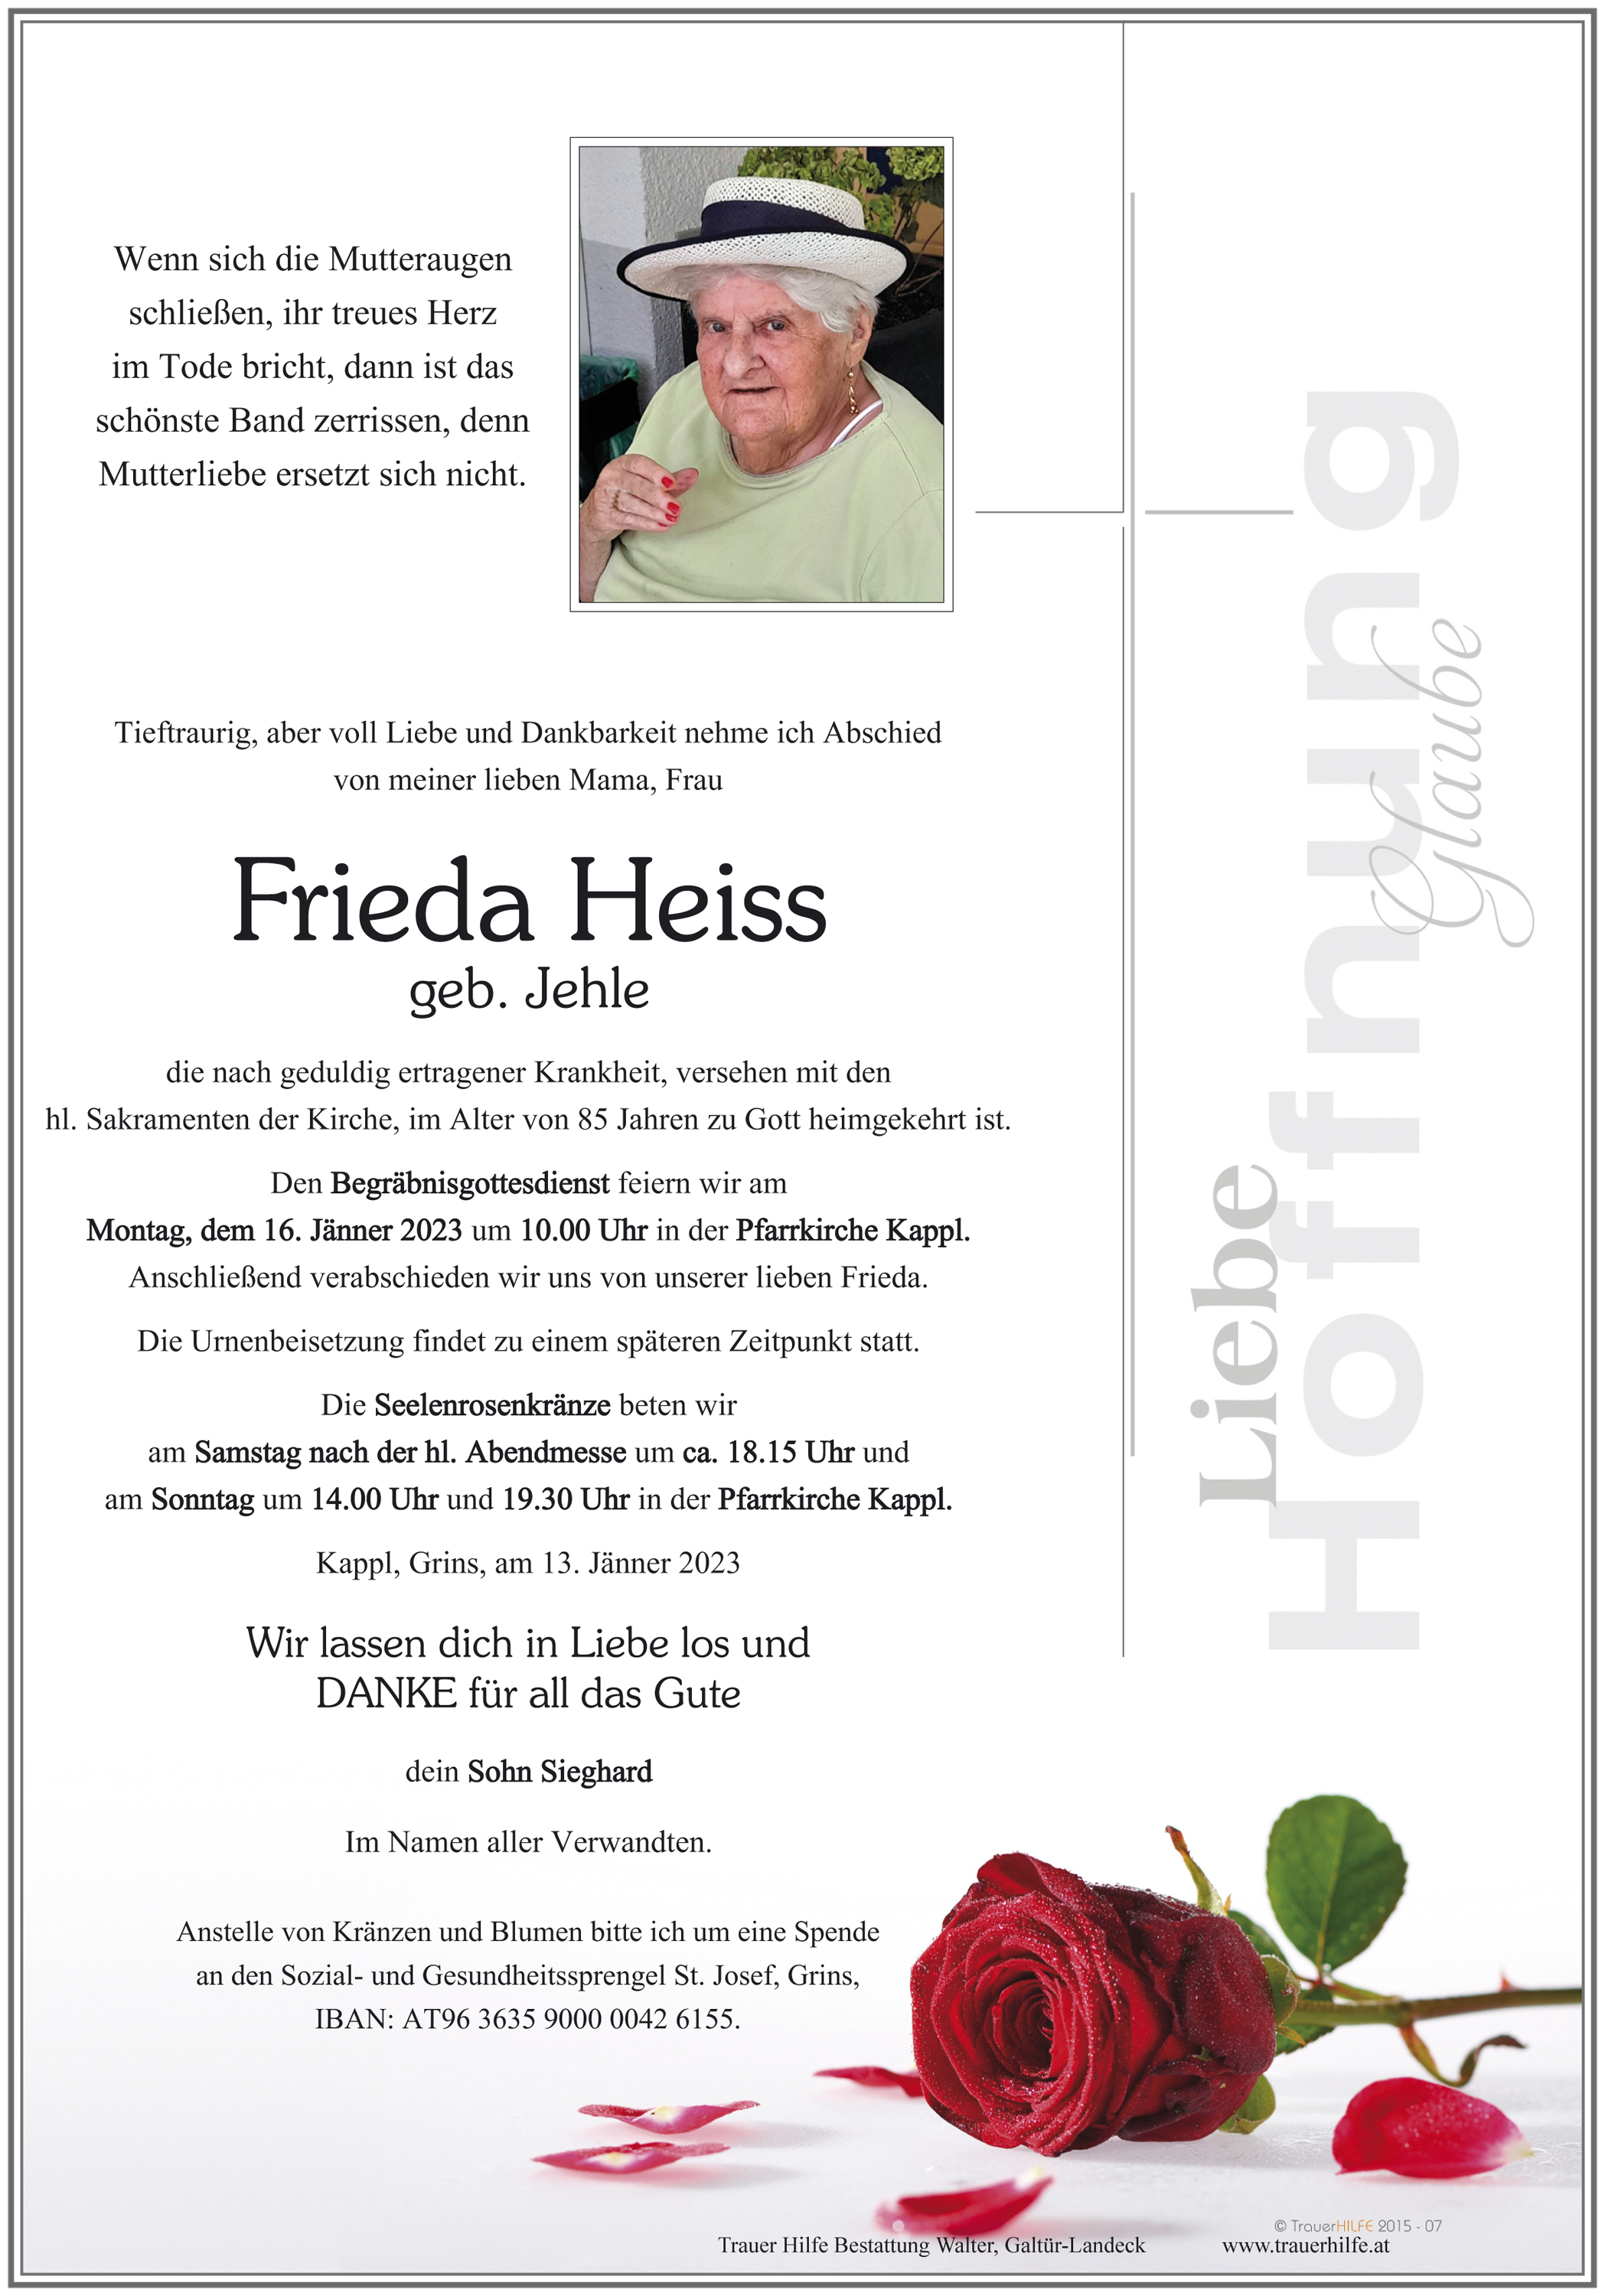 Frieda Heiss